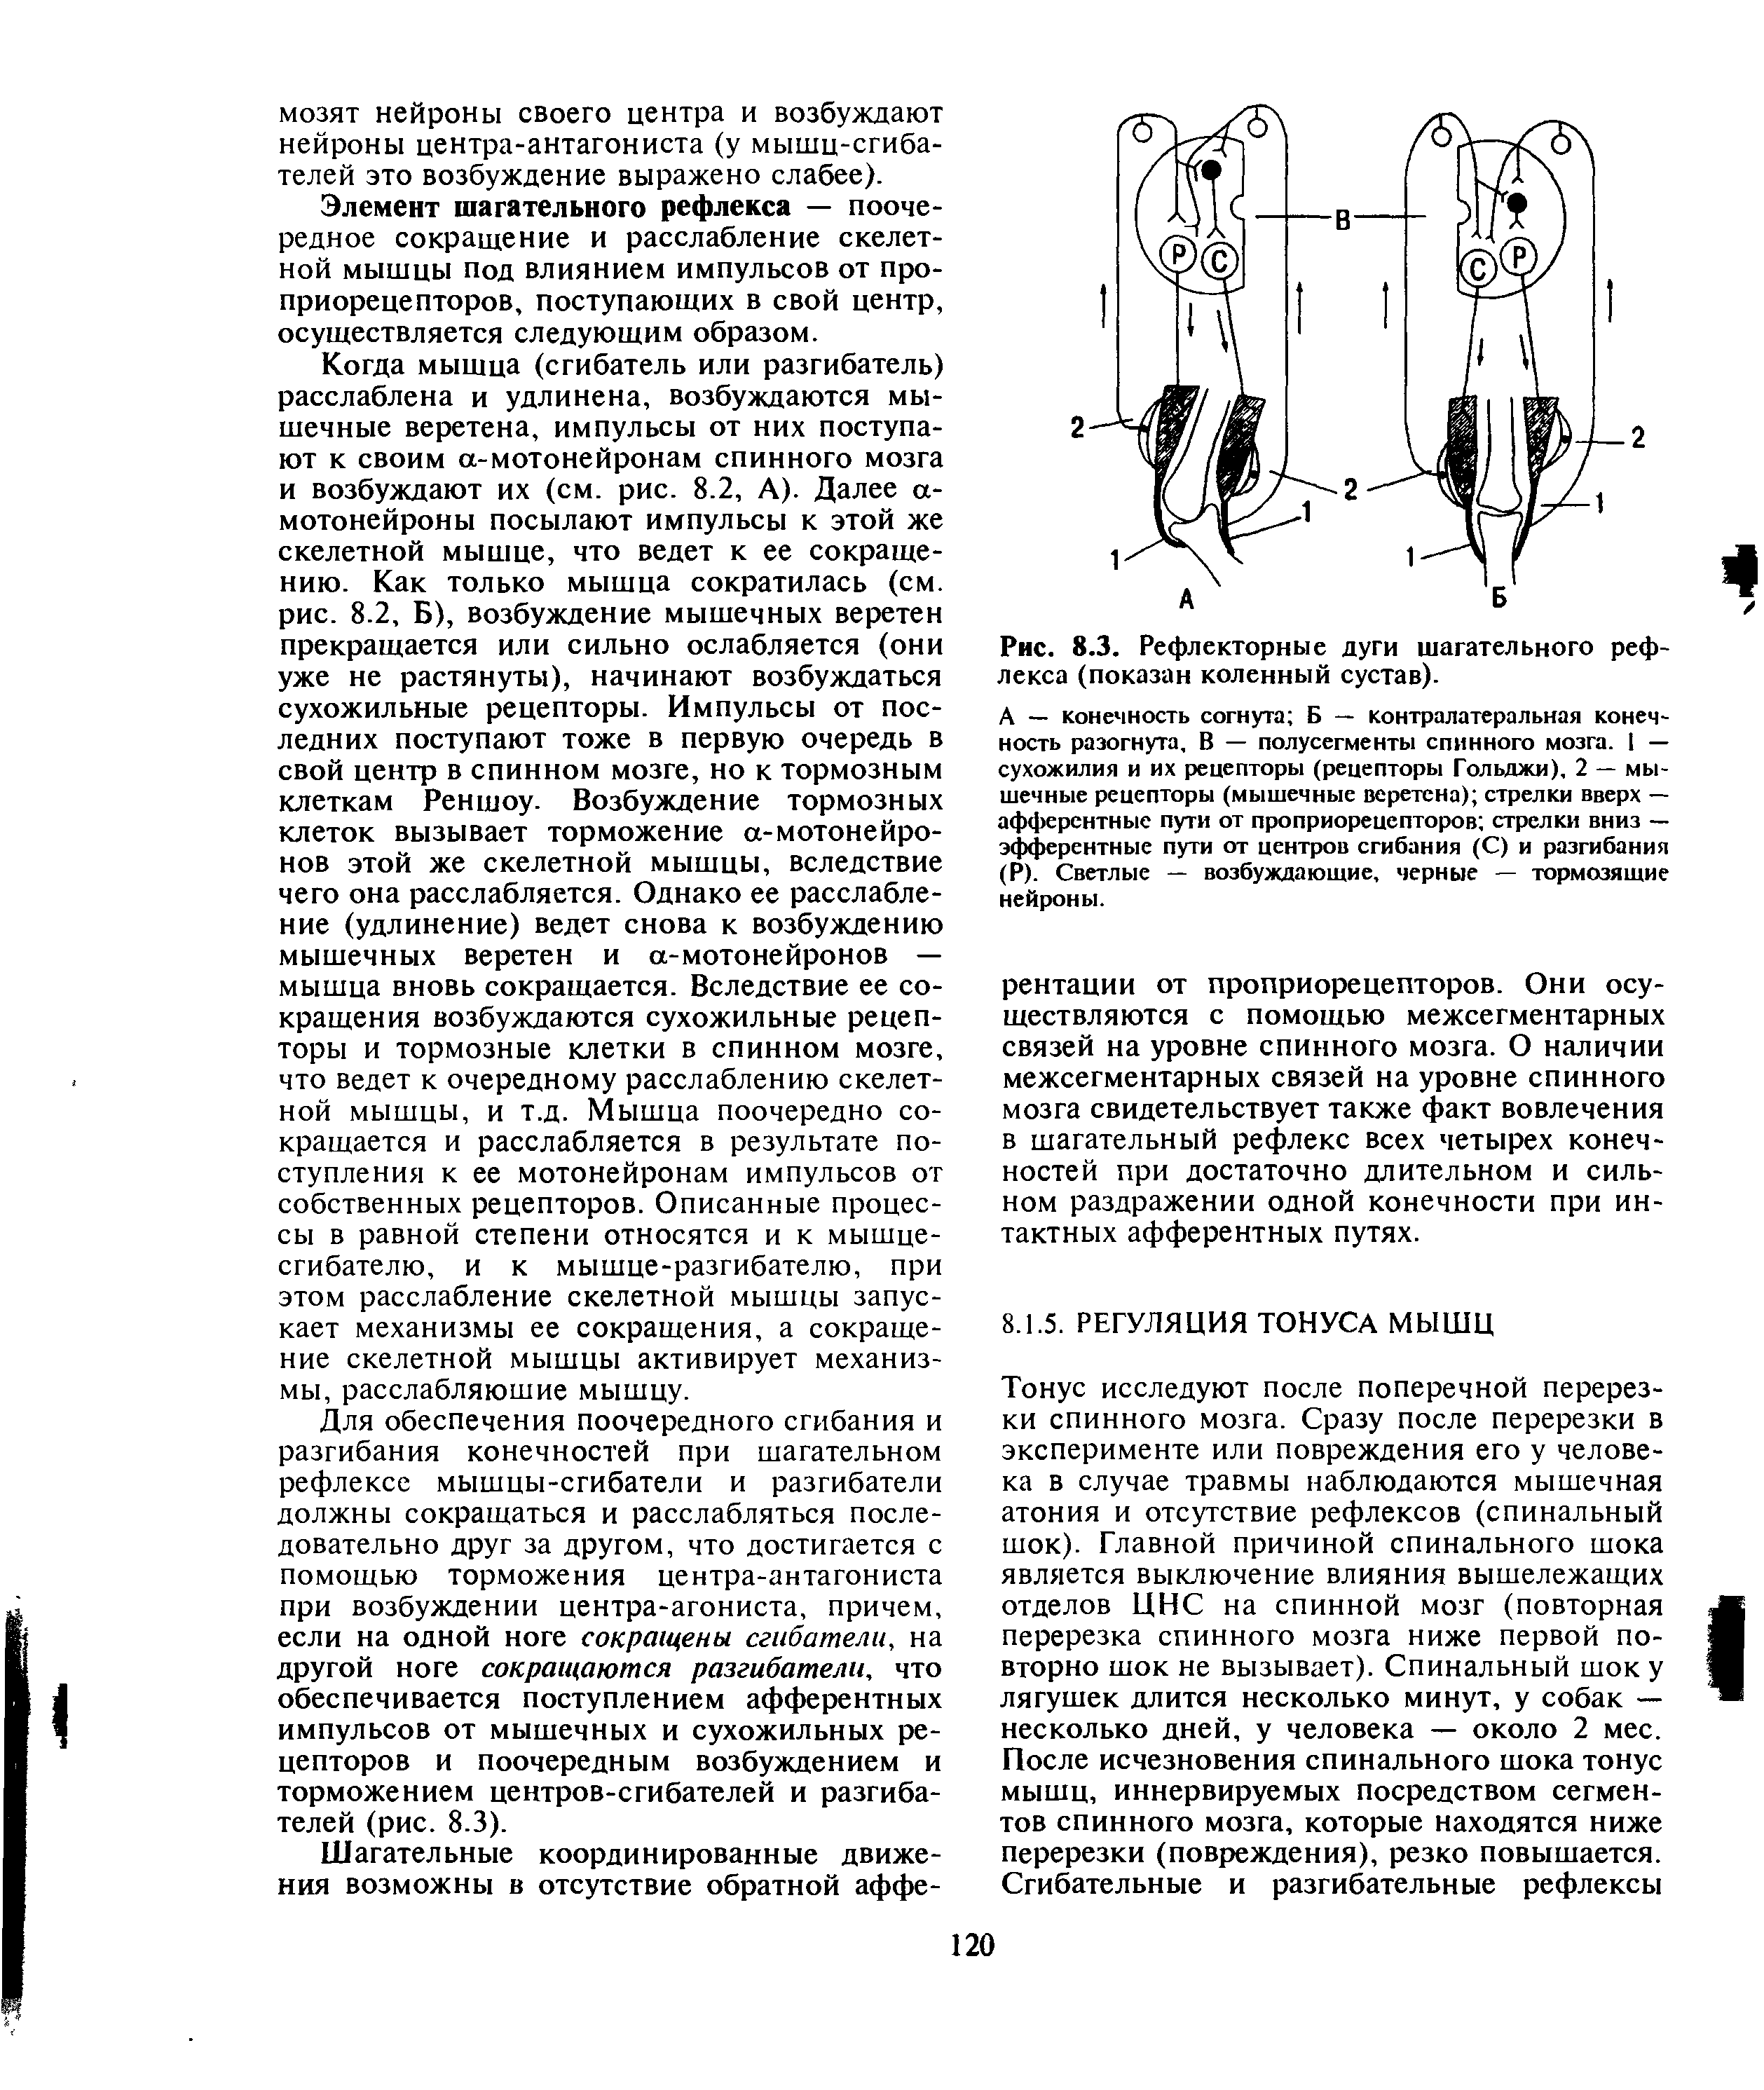 Рис. 8.3. Рефлекторные дуги шагательного рефлекса (показан коленный сустав).